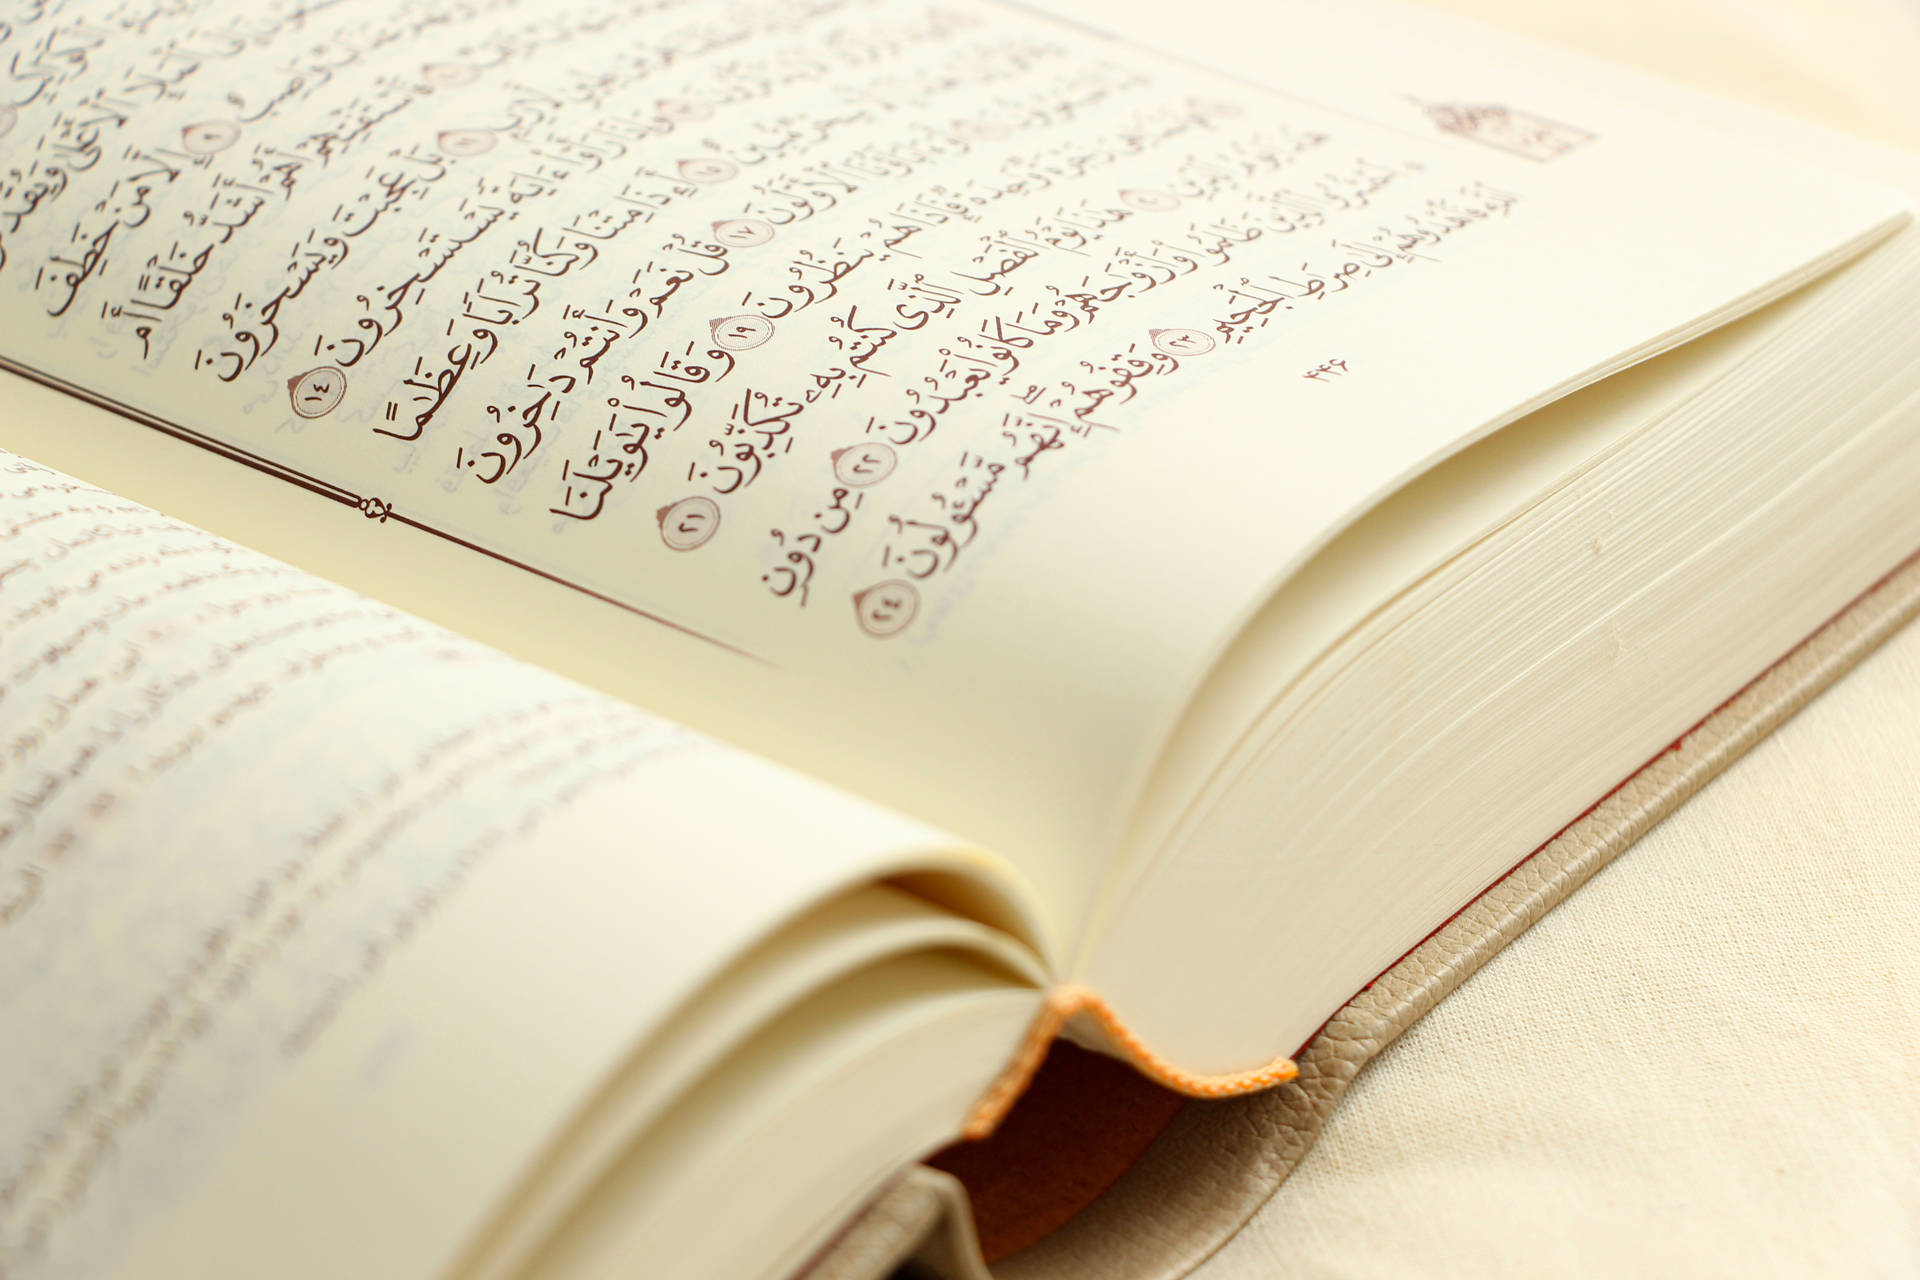 Quran Book Of Allah